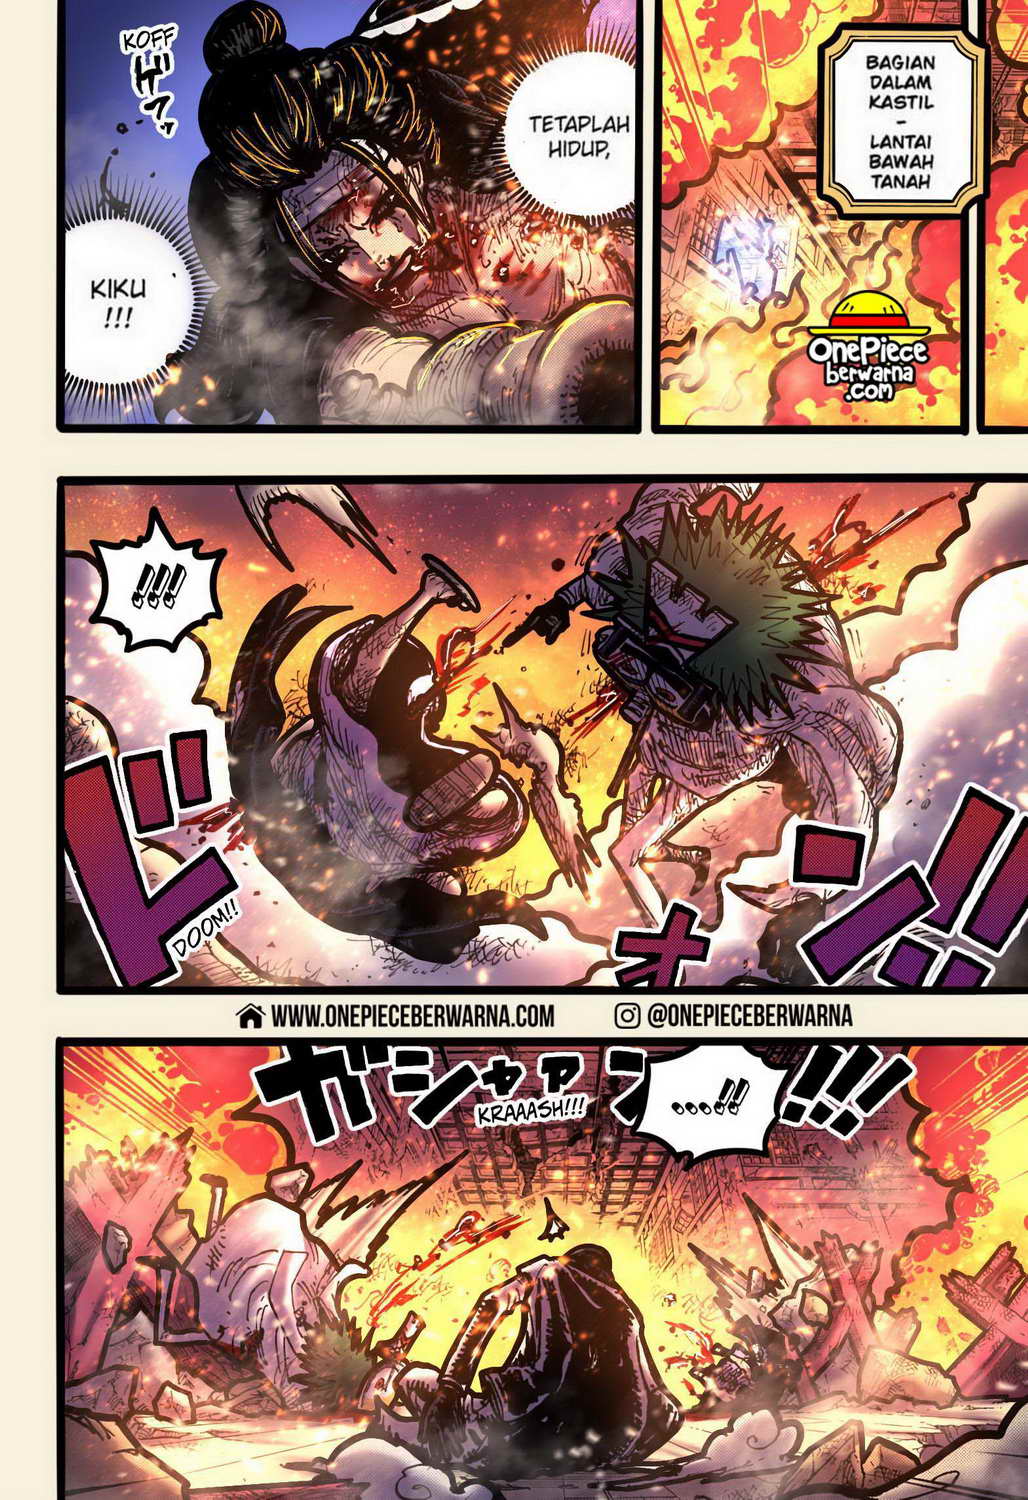 One Piece Berwarna Chapter 1041